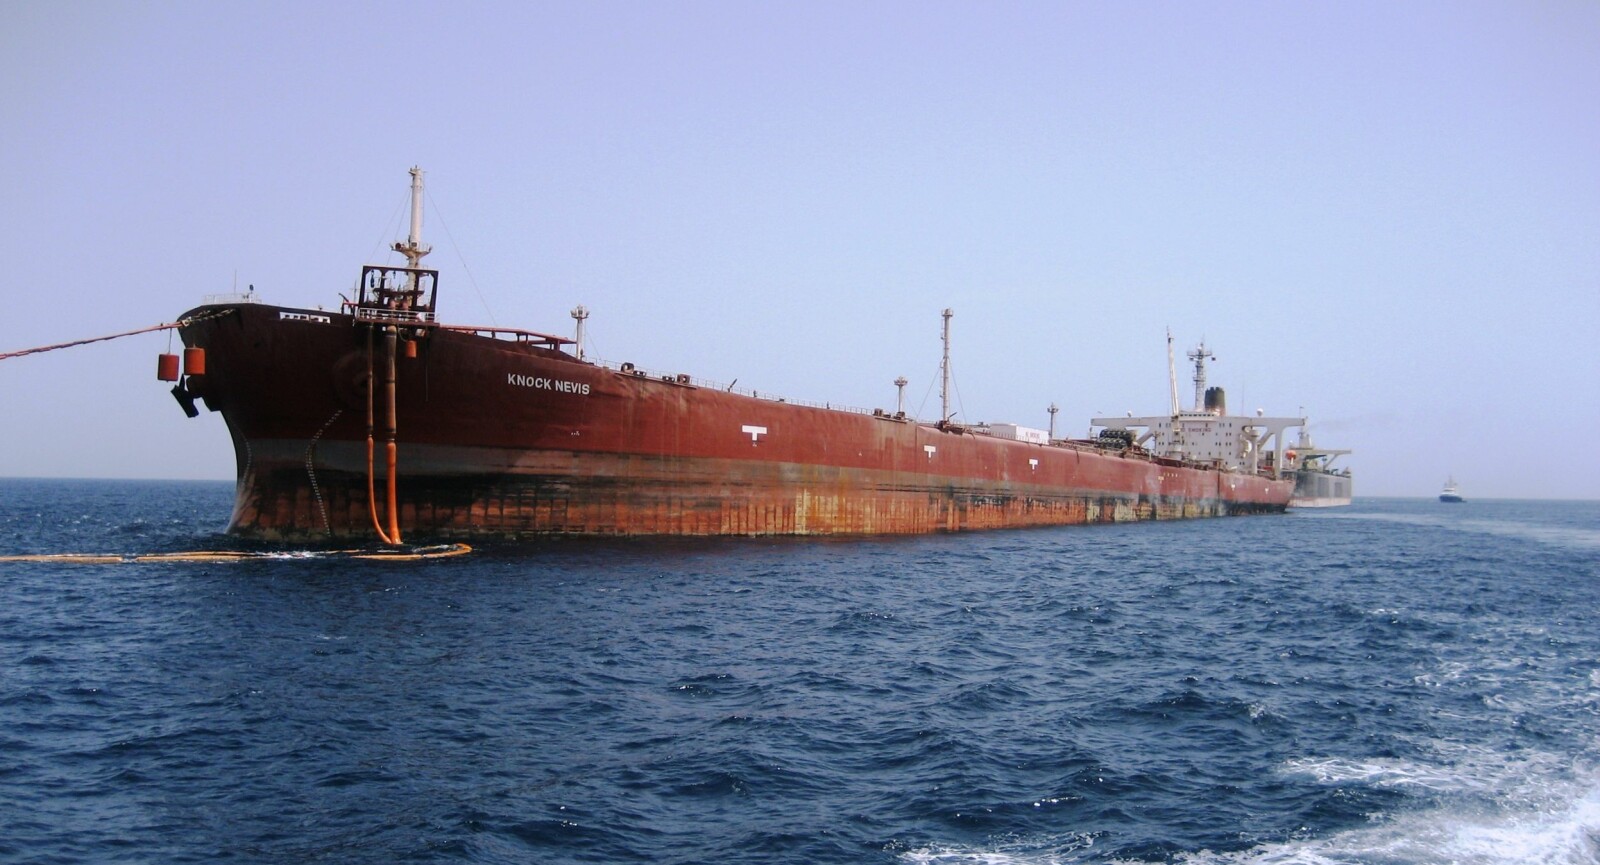 <b>KNOCK NEVIS:</b> Etter KS Jahre Viking overtok Fred. Olsen-selskapet First Olsen Tankers. Skipet ble døpt om til «Knock Nevis» og ble benyttet som FSO (Floating Storage and Offloading unit). 